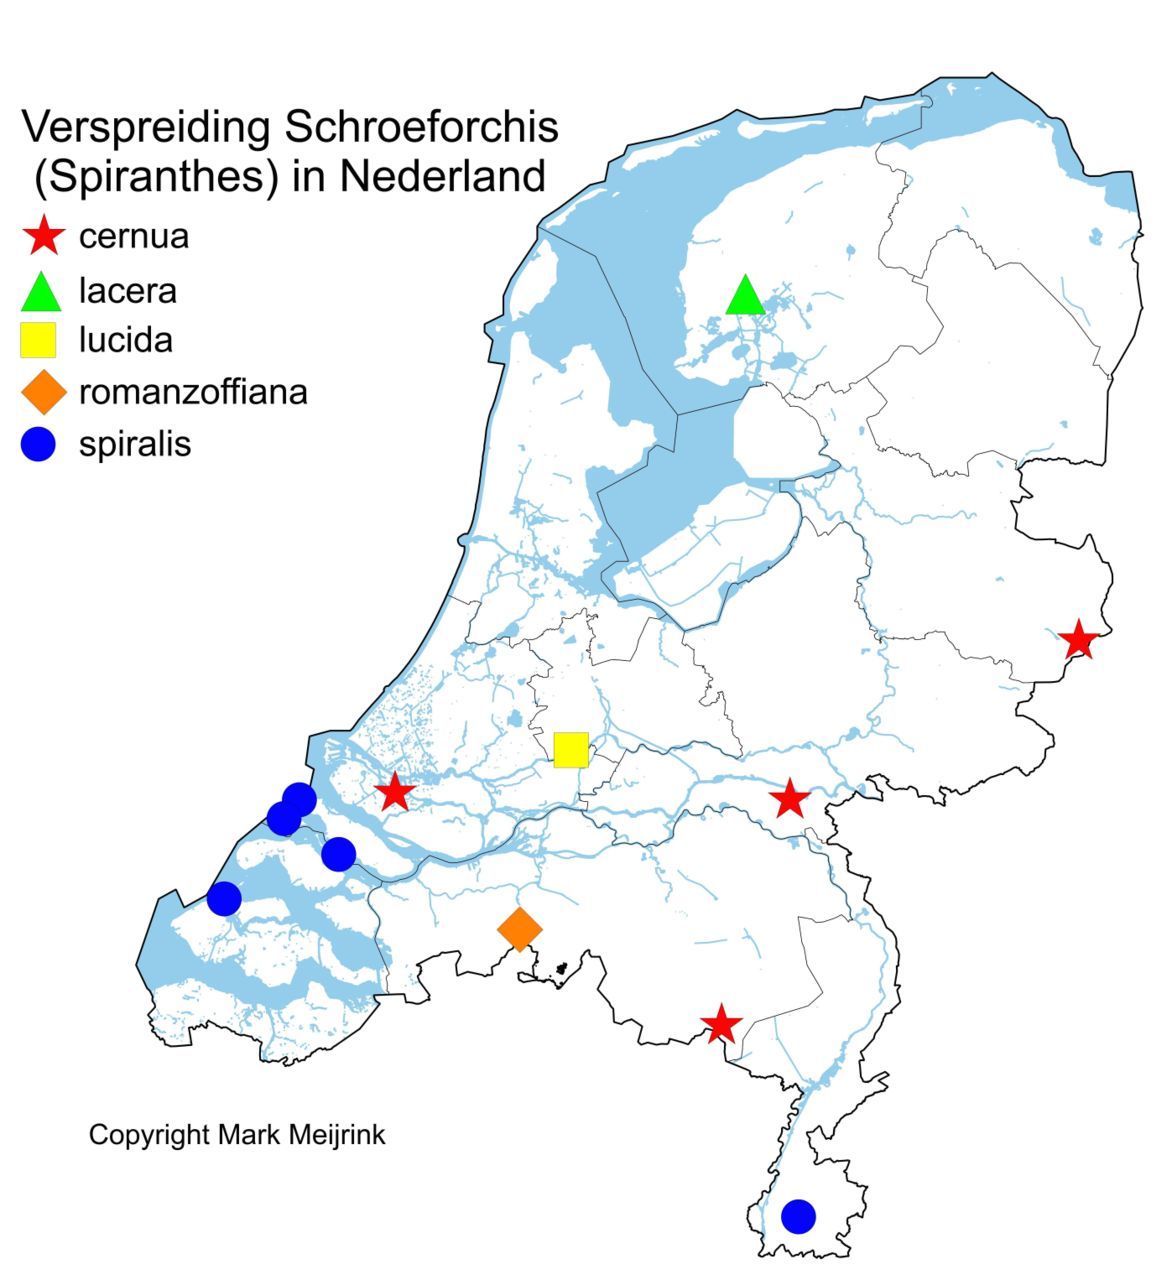 Verspreiding van Schroeforchissoorten (Spiranthes) in Nederland. Kaart gebaseerd op publiekelijk toegankelijke verspreidingskaarten van Waarneming.nl, Verspreidingsatlas FLORON en bronnen auteur (foto: Mark Meijrink)